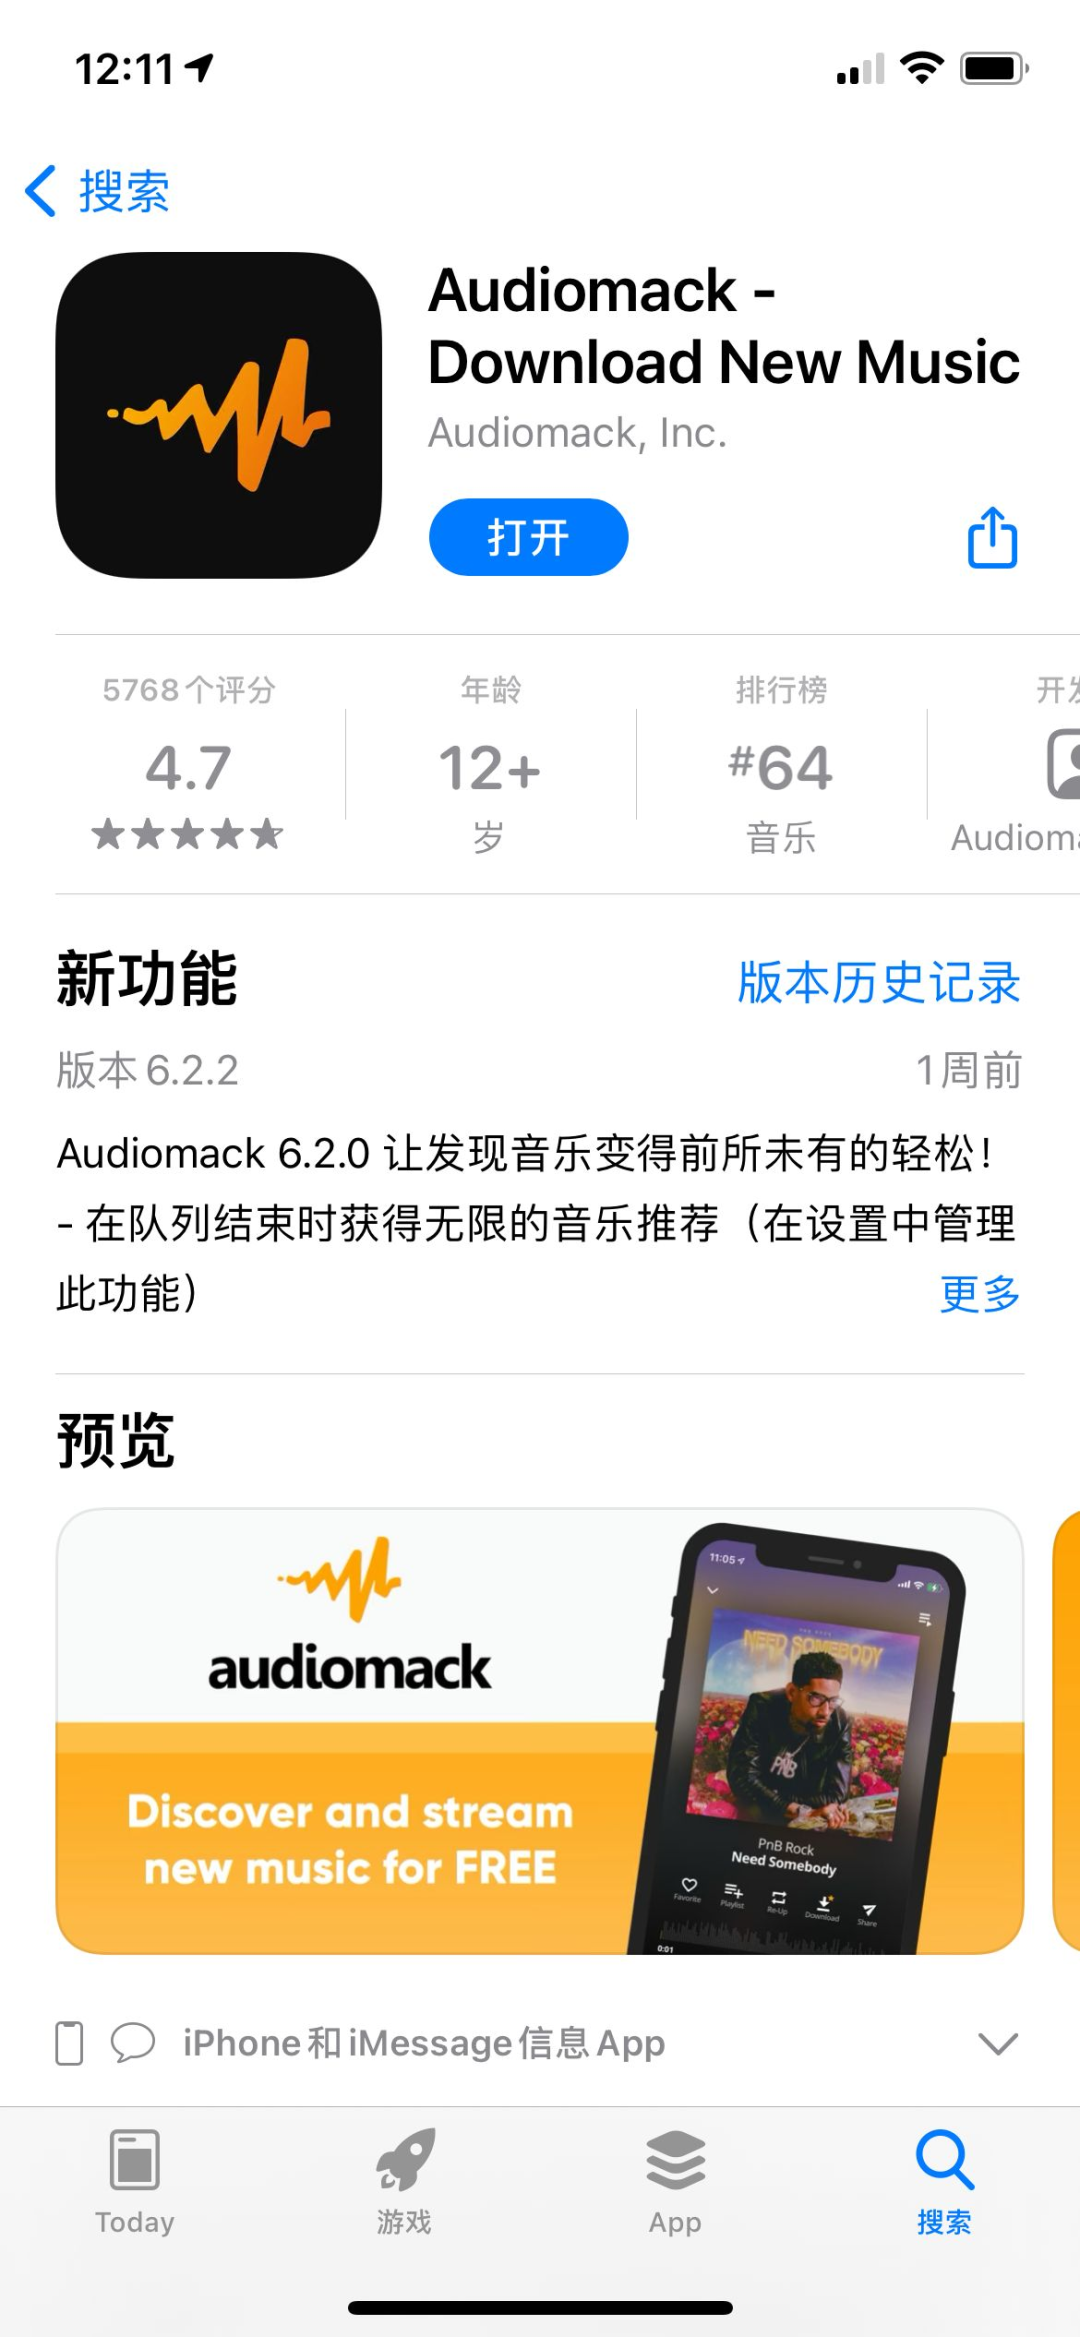 Audiomack，真正意义上的音乐共享平台，看看符不符合您的预期！求你们低调使用